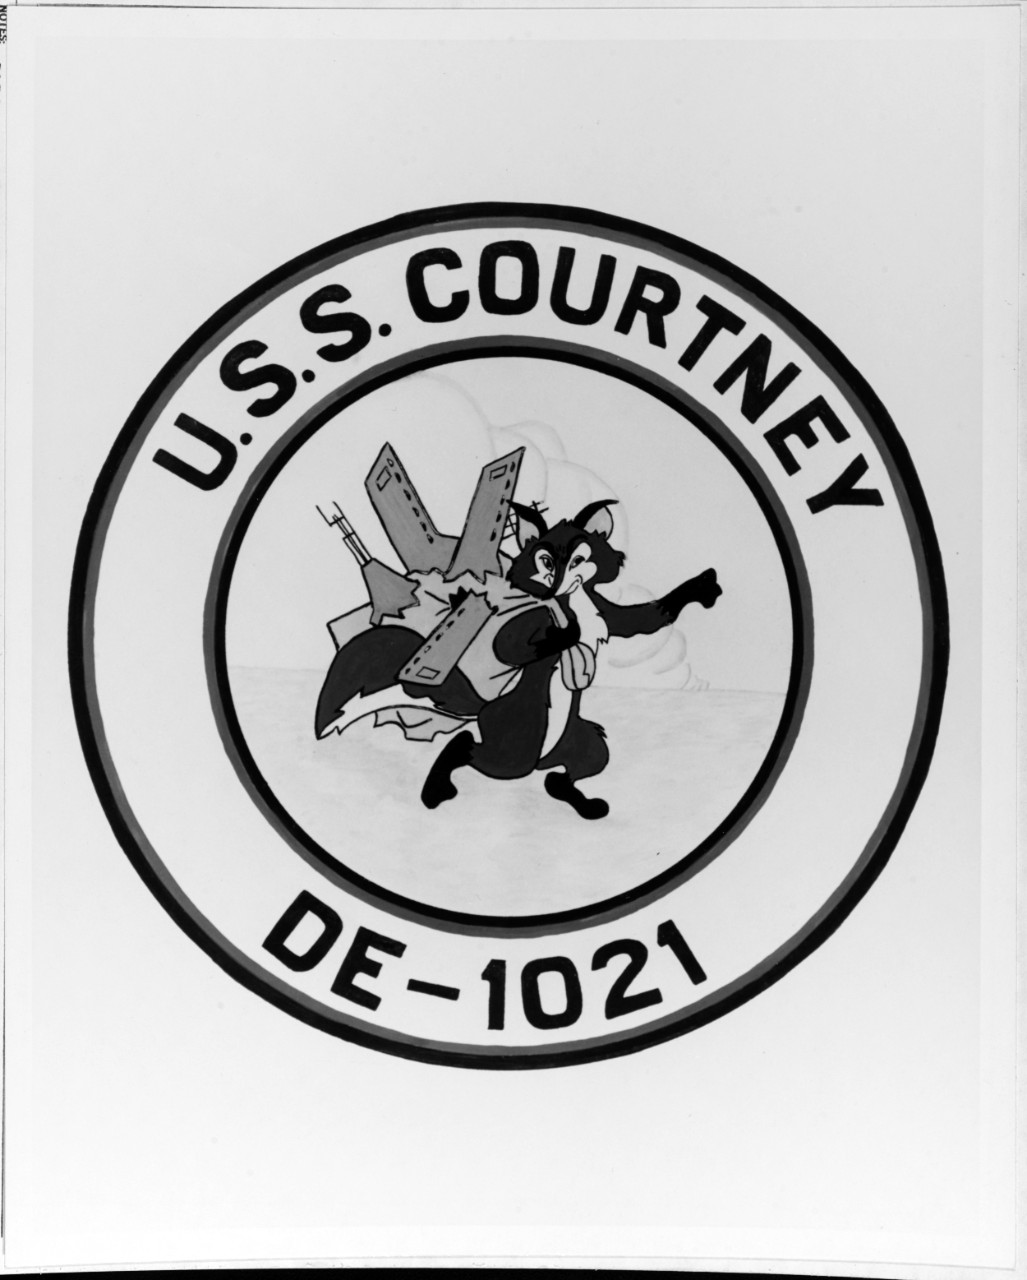 Insignia: USS COURTNEY (DE-1021)